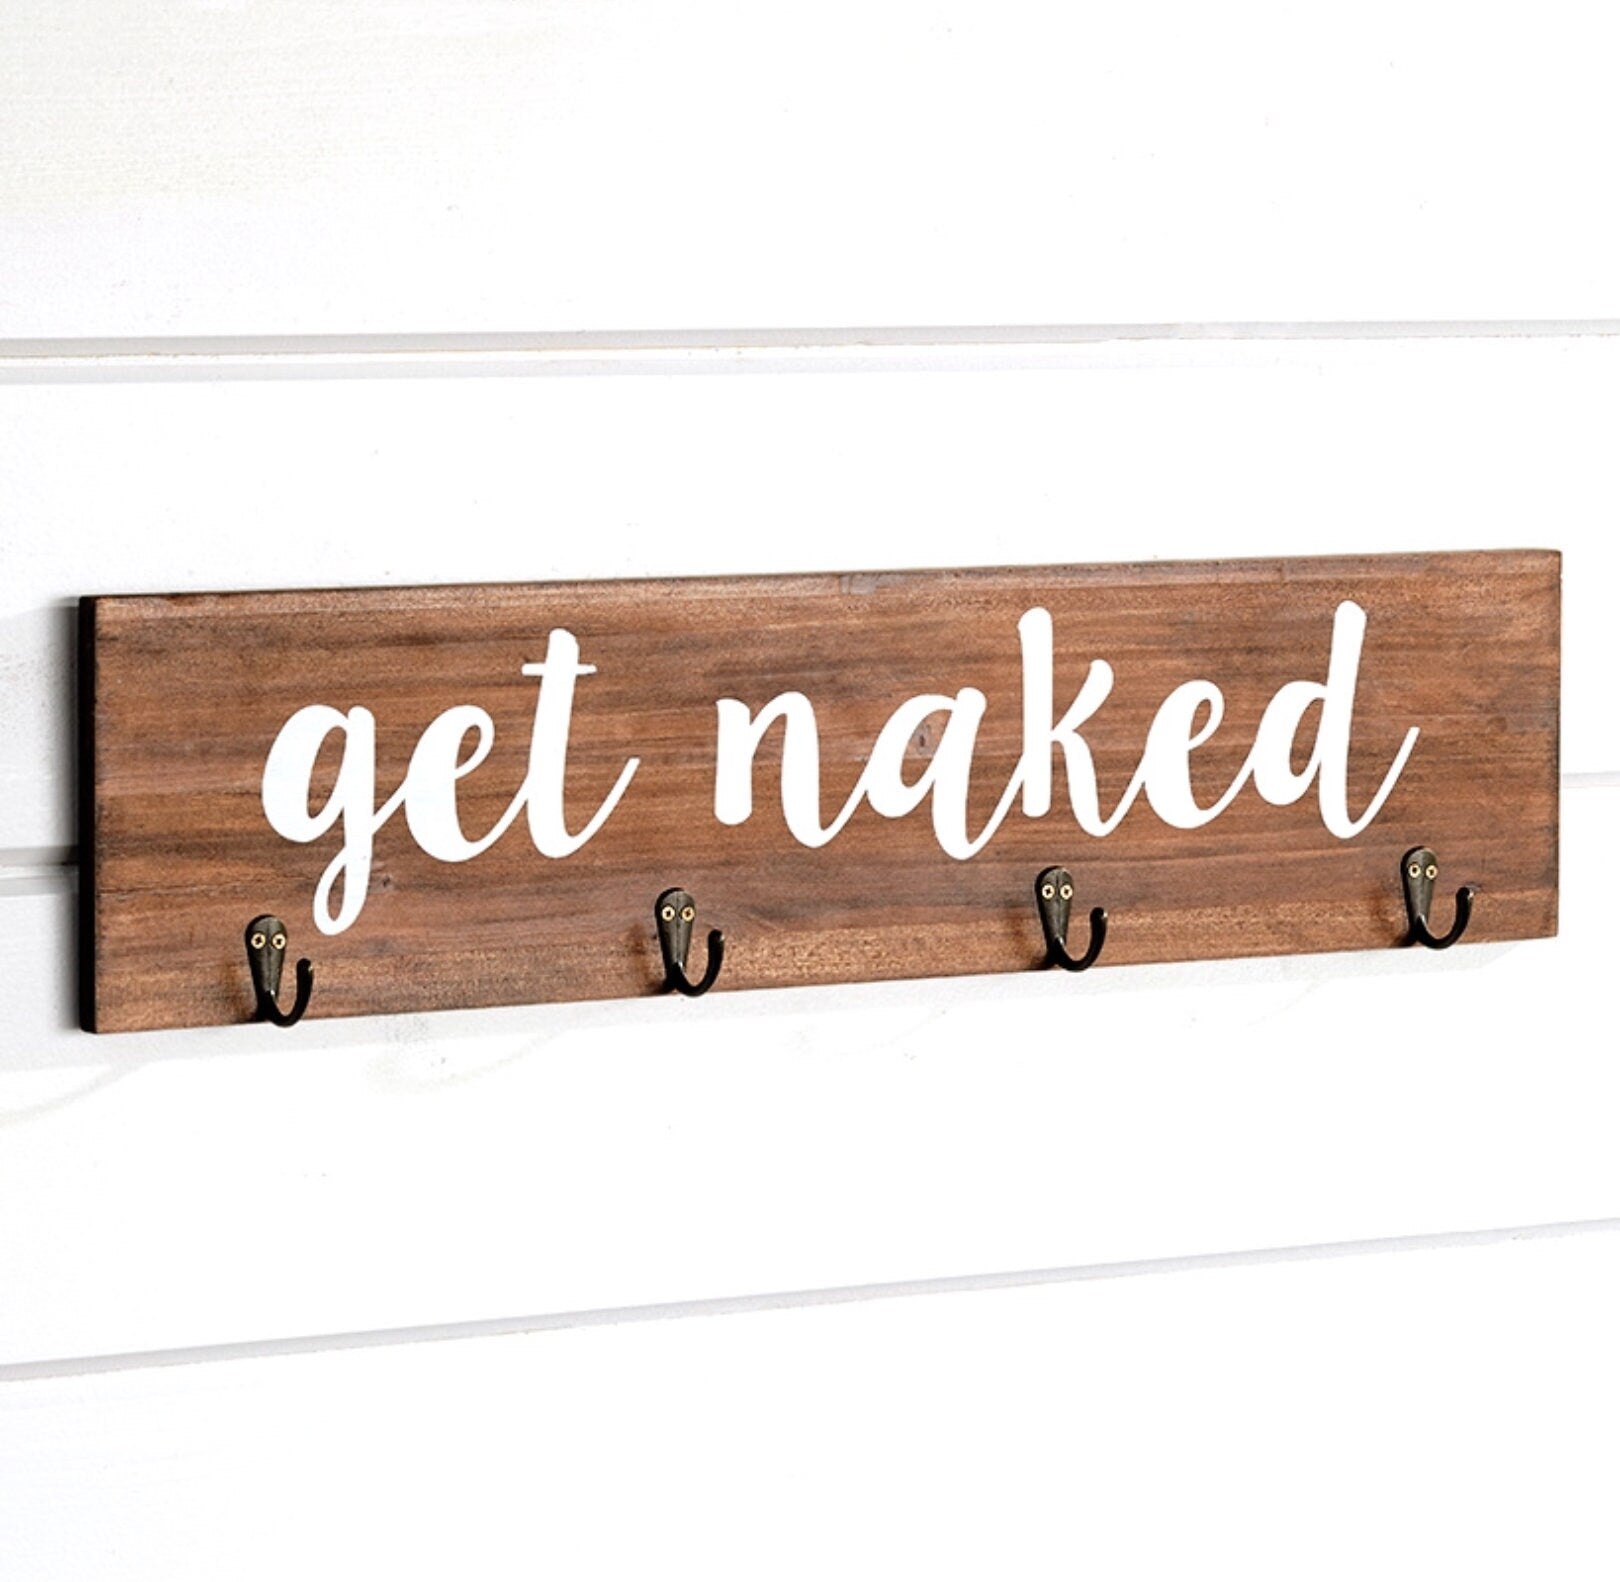 Get Naked Bathroom Towel Hooks Sign